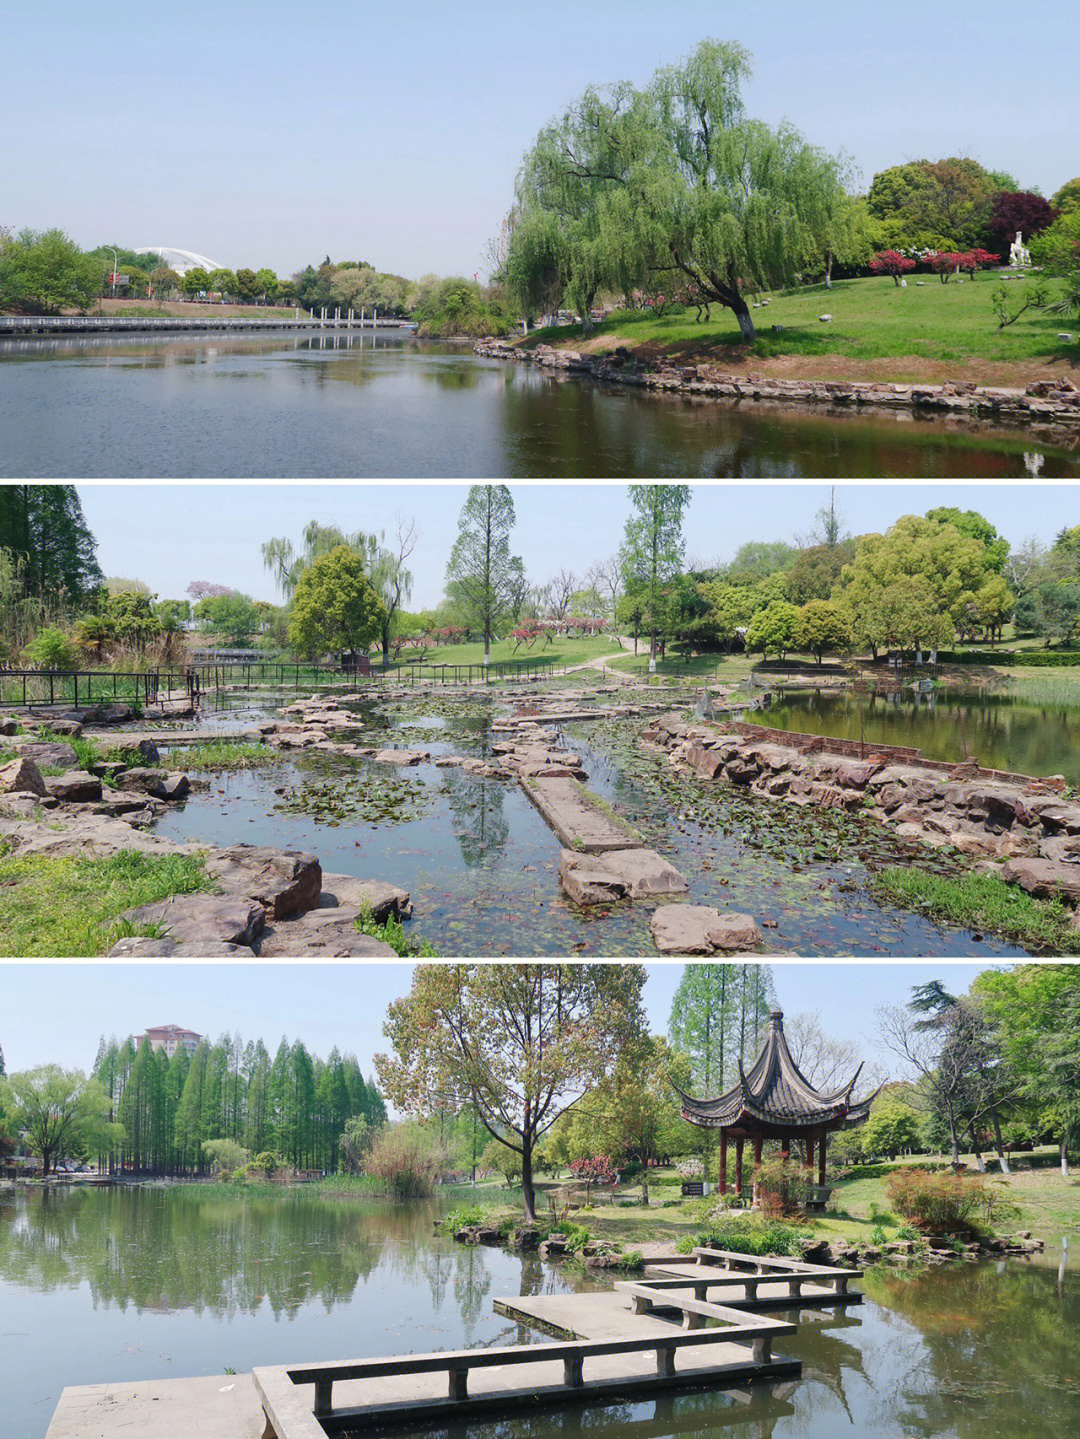 南京白马公园地图图片